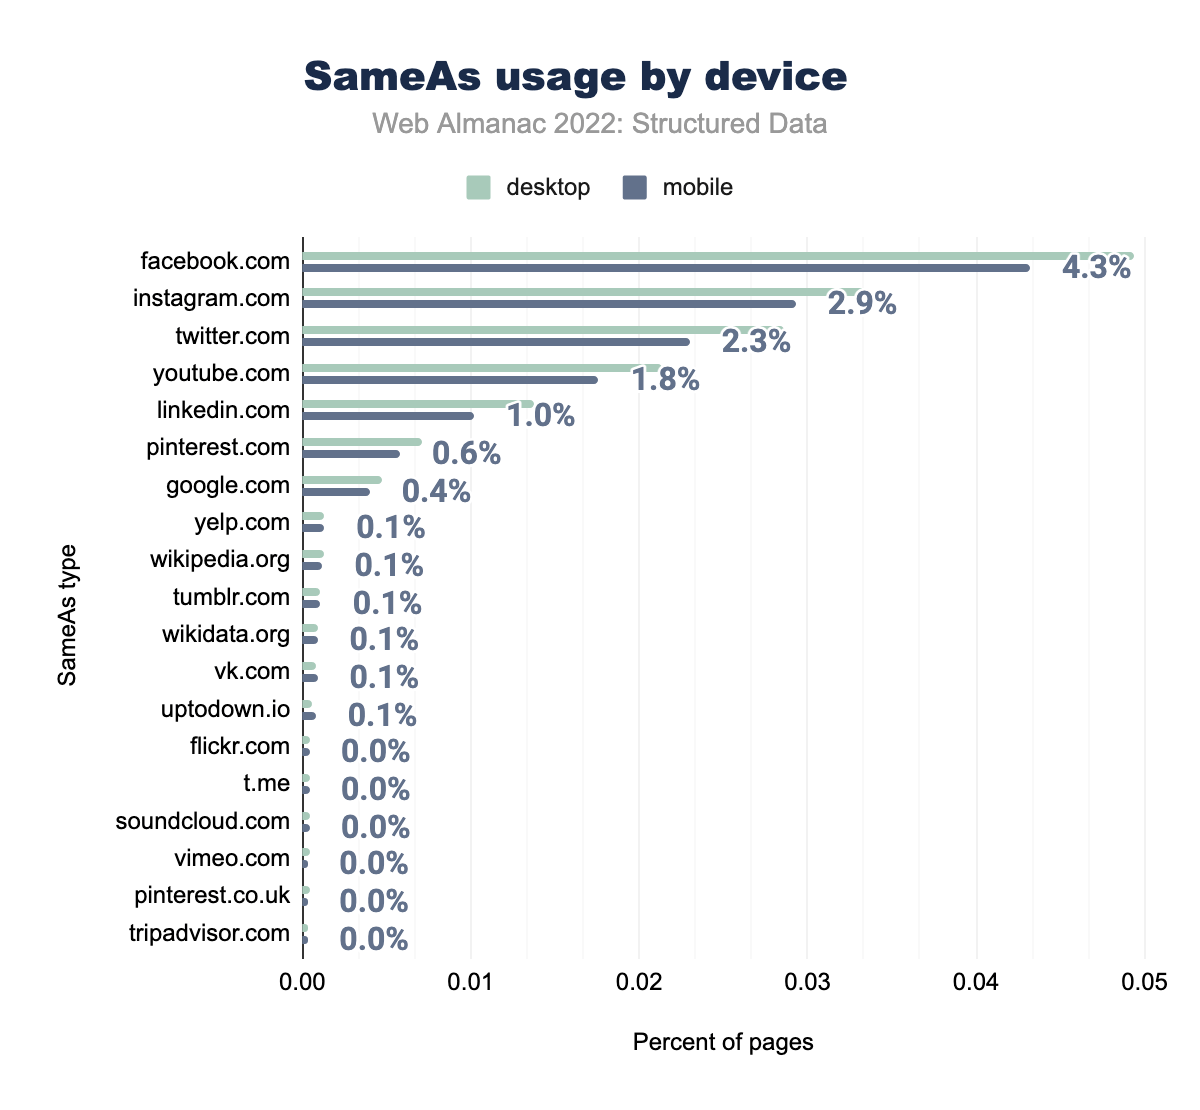 Utilizzo di SameAs per dispositivo